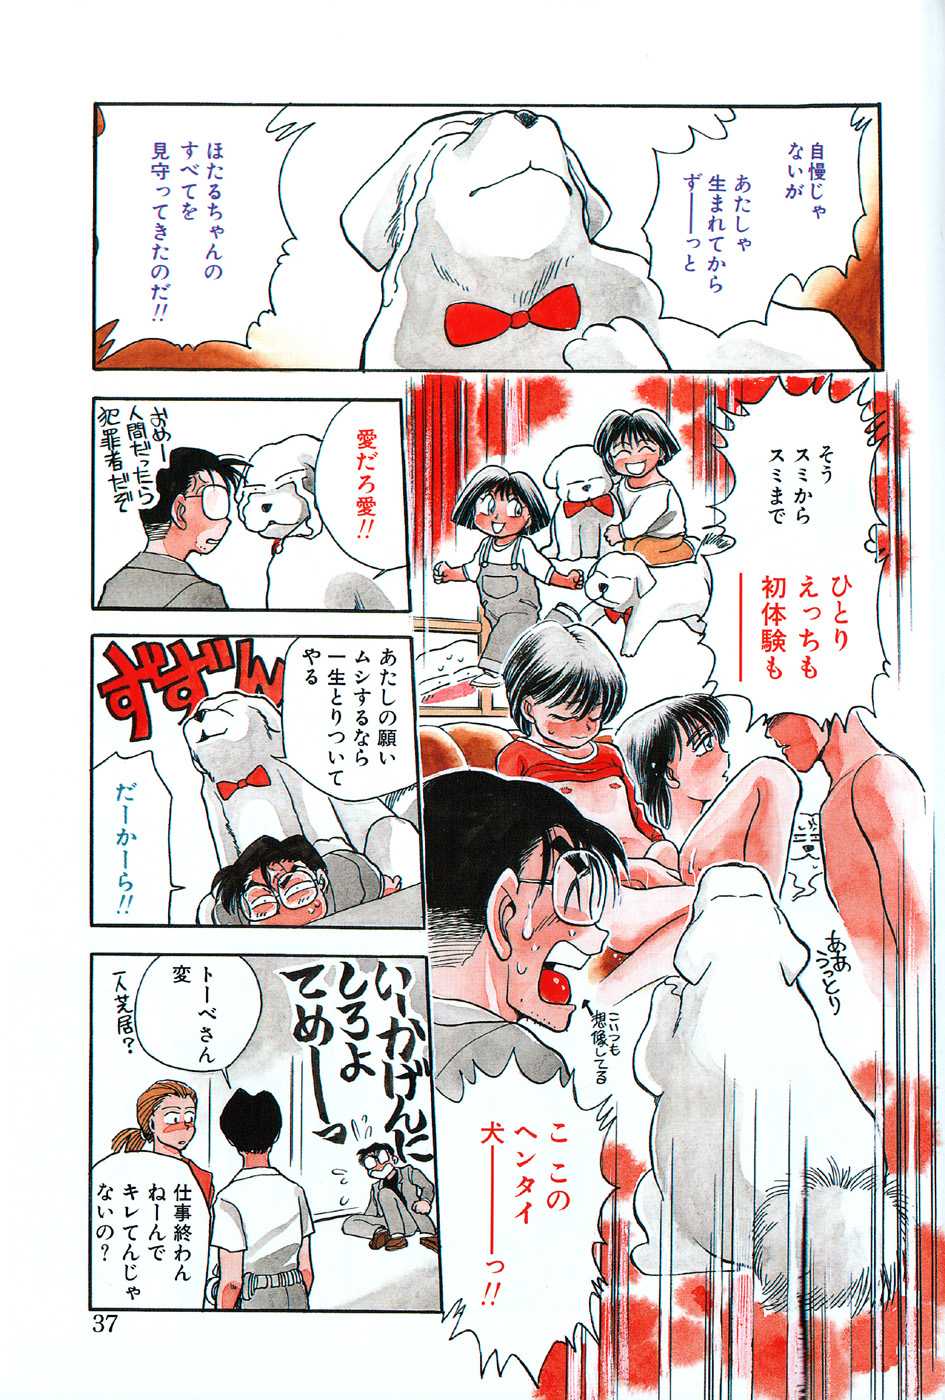 [Chiba Dirou]hotaru no kibunn [千葉治郎] ほたるのきぶん (1995-05-01)